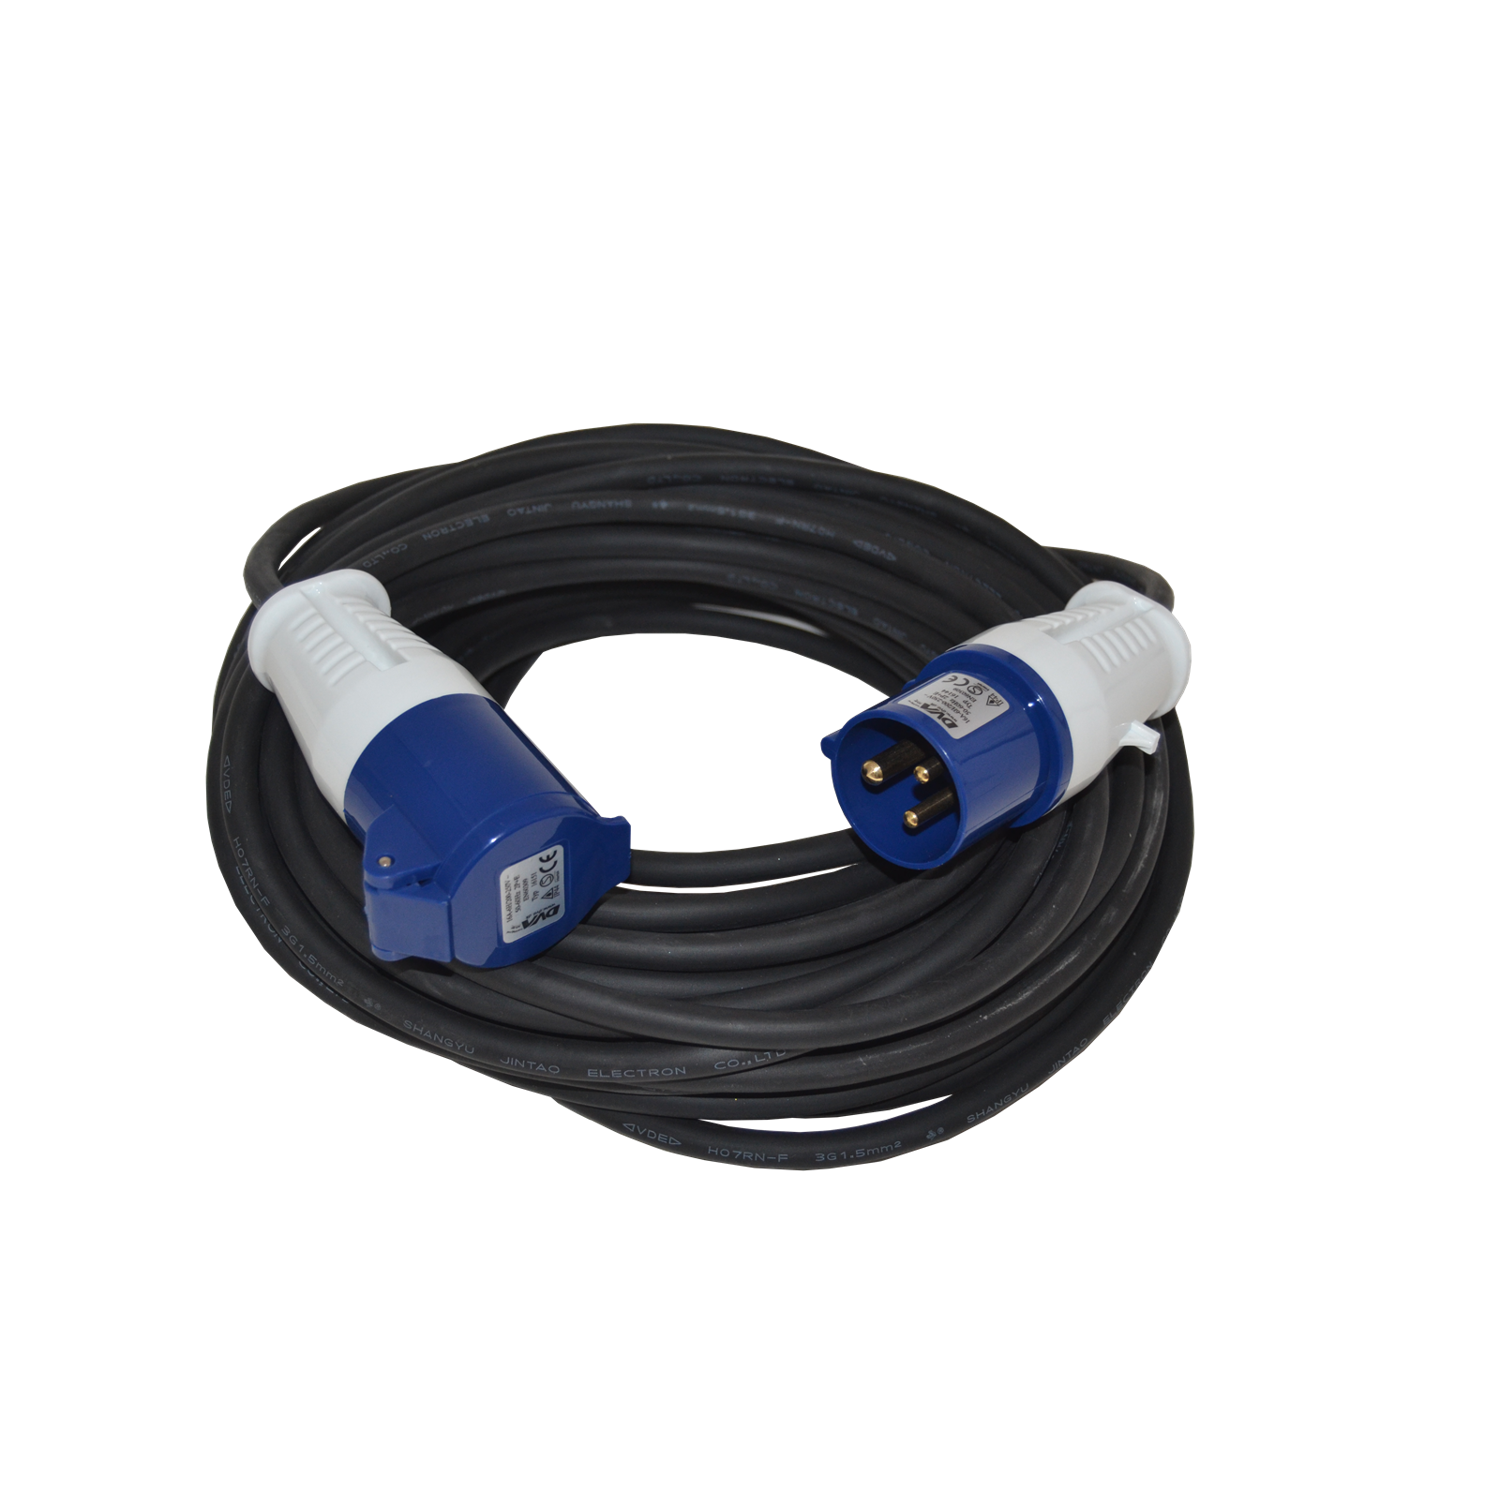 Billede af BLUE ELECTRIC kabelsæt CEE 230V 16A 25m 3x2,5mm2 hos Toolster.dk